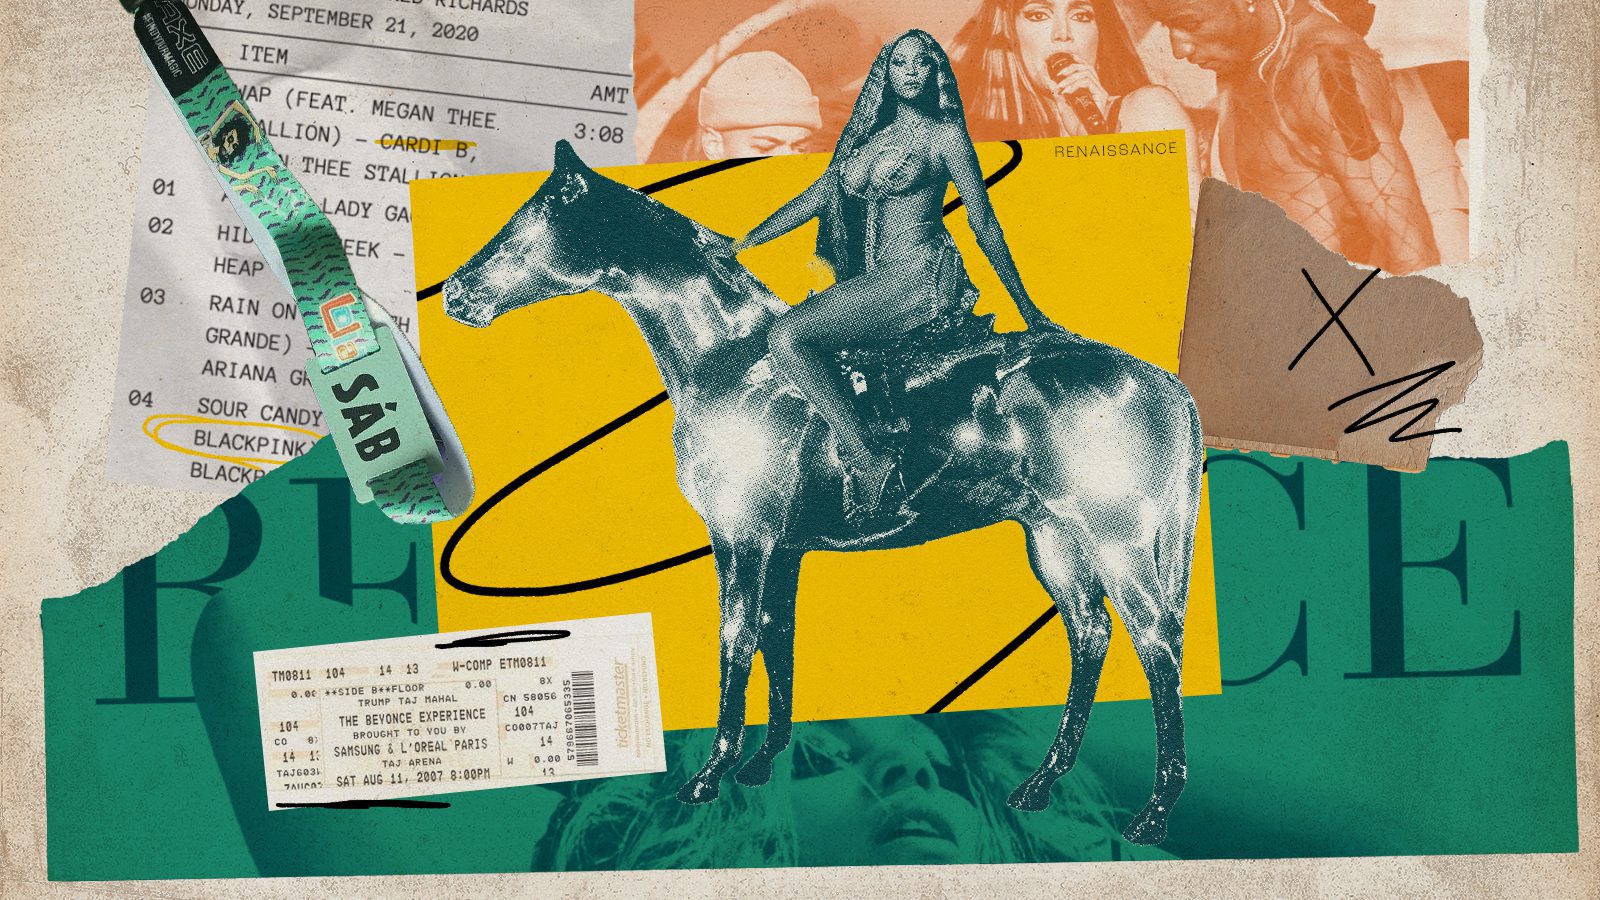 Colagem com Beyoncé pra ilustrar o mercado de shows e entretenimento